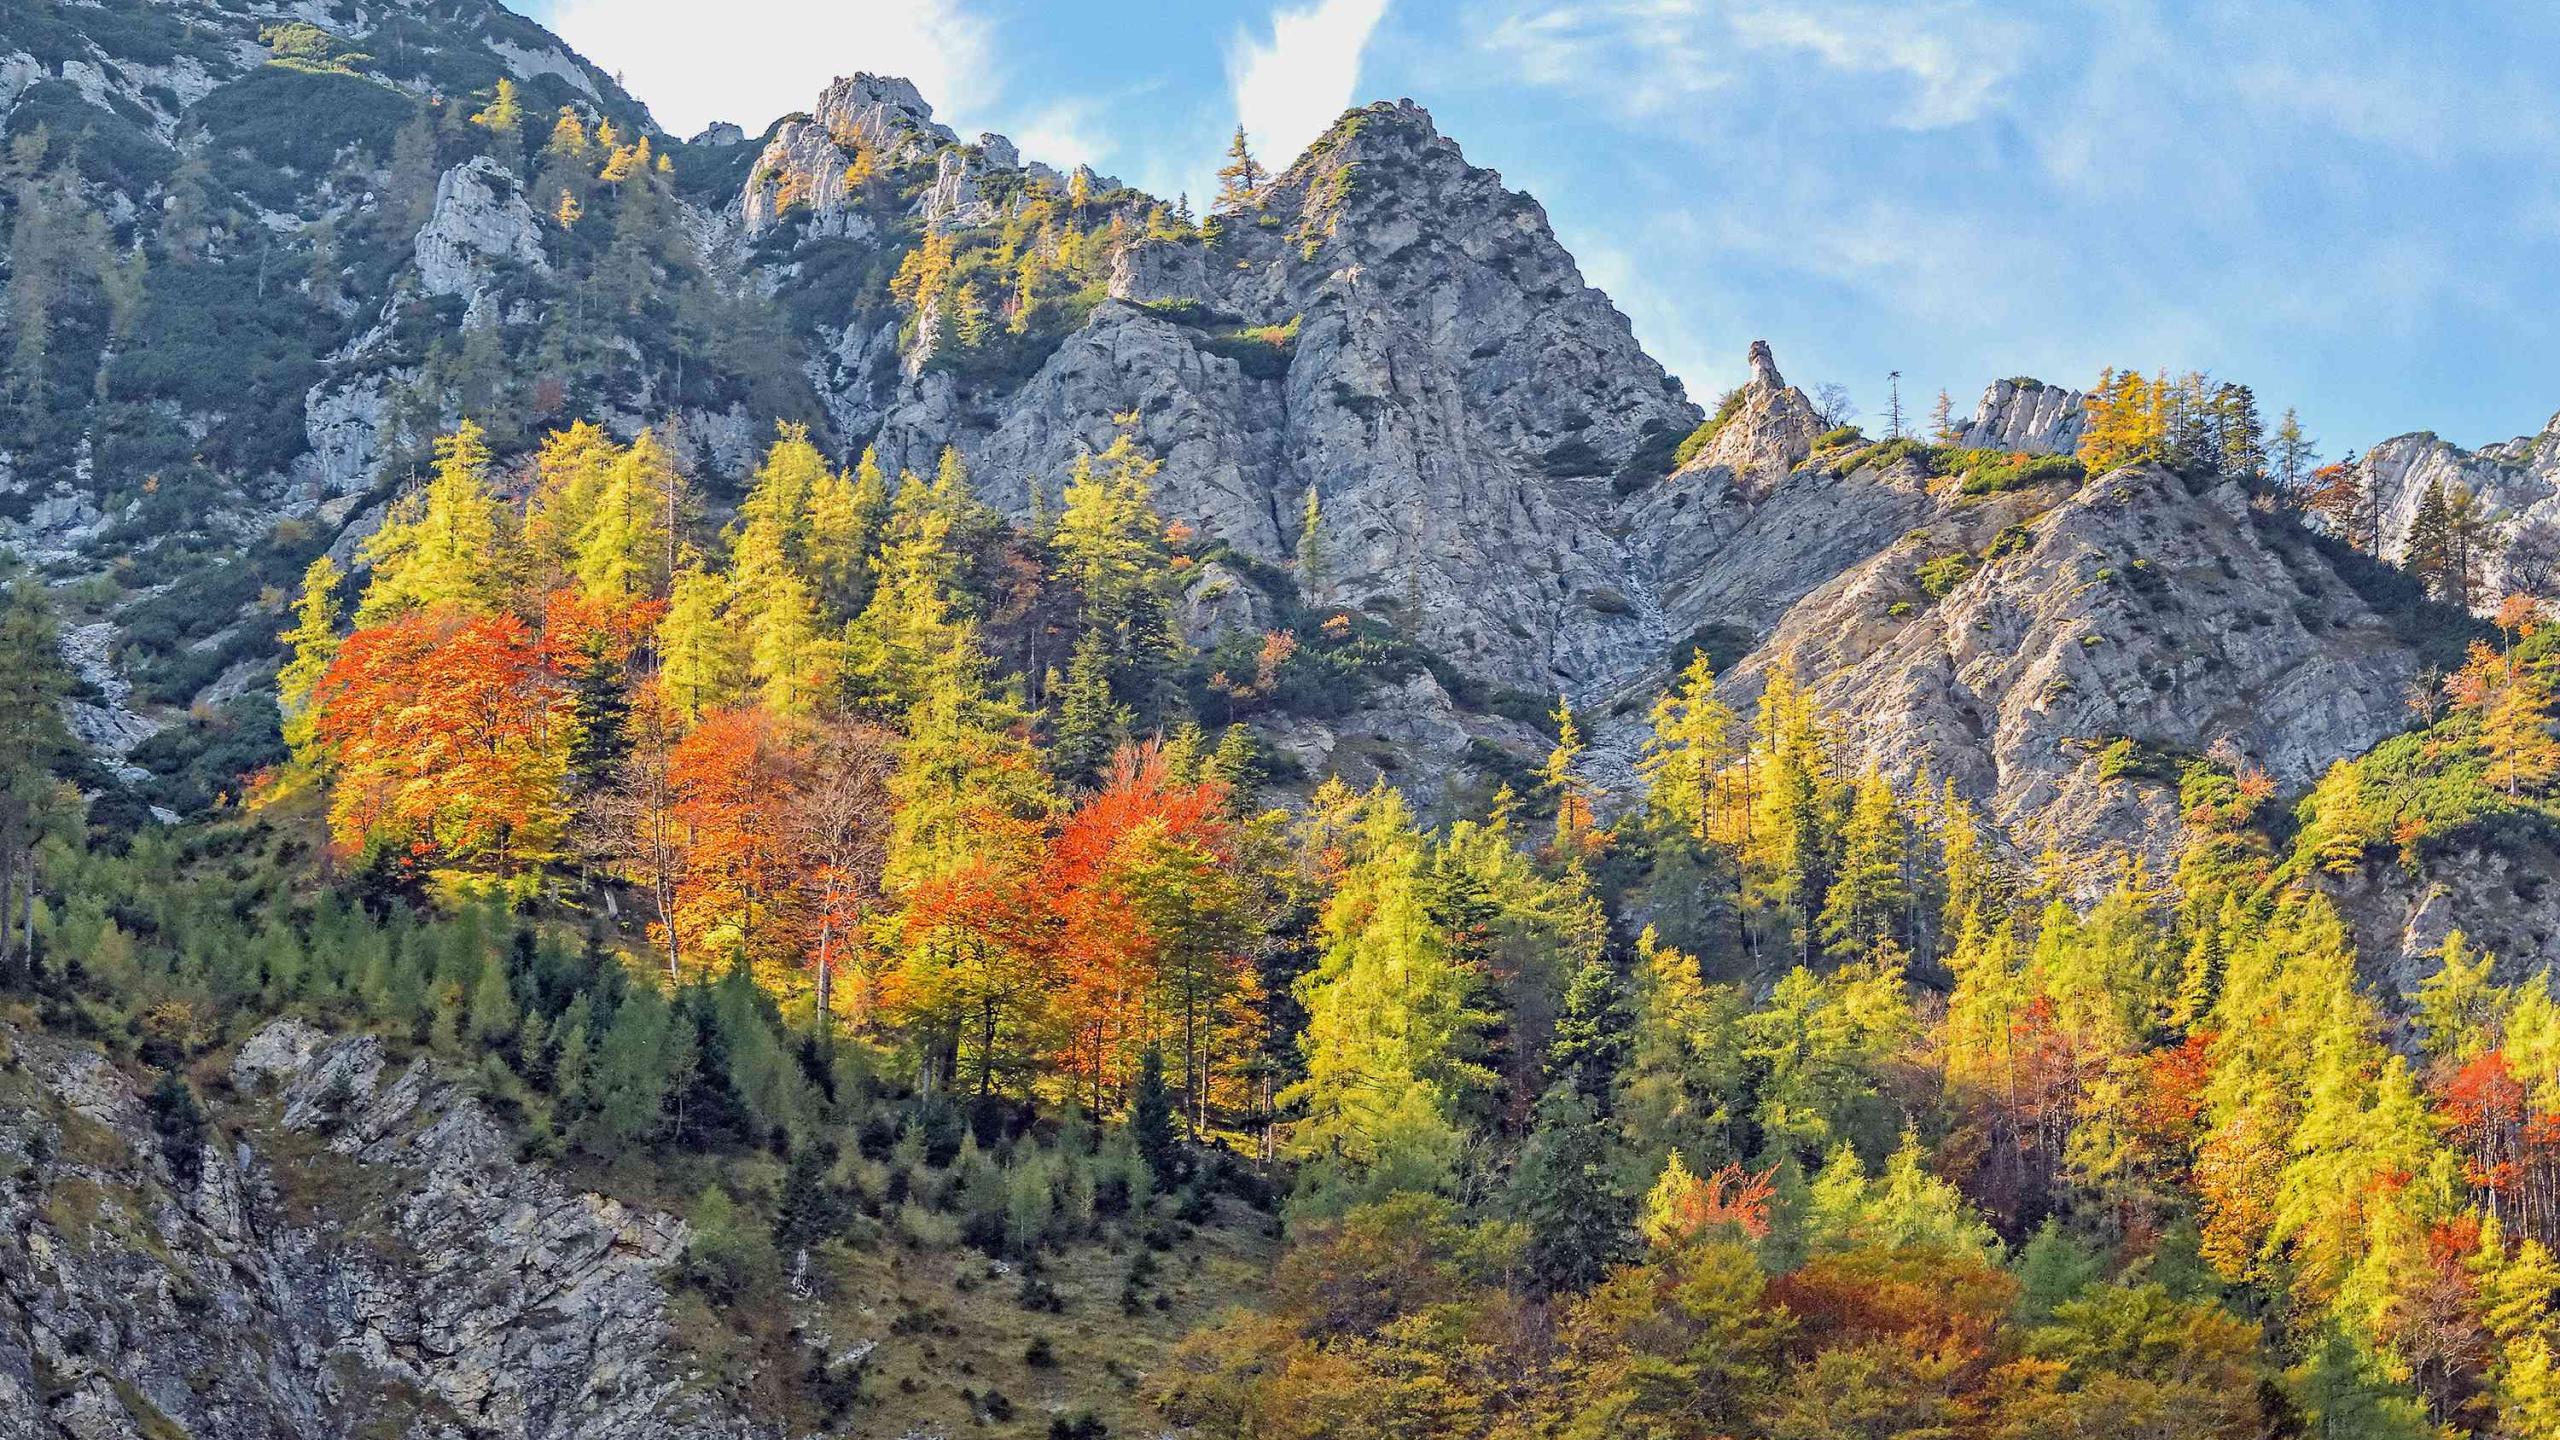 Herbstlich gefärbter Buchen-Lärchenwald wächst Inselartig mitten in steilem Felsgelände